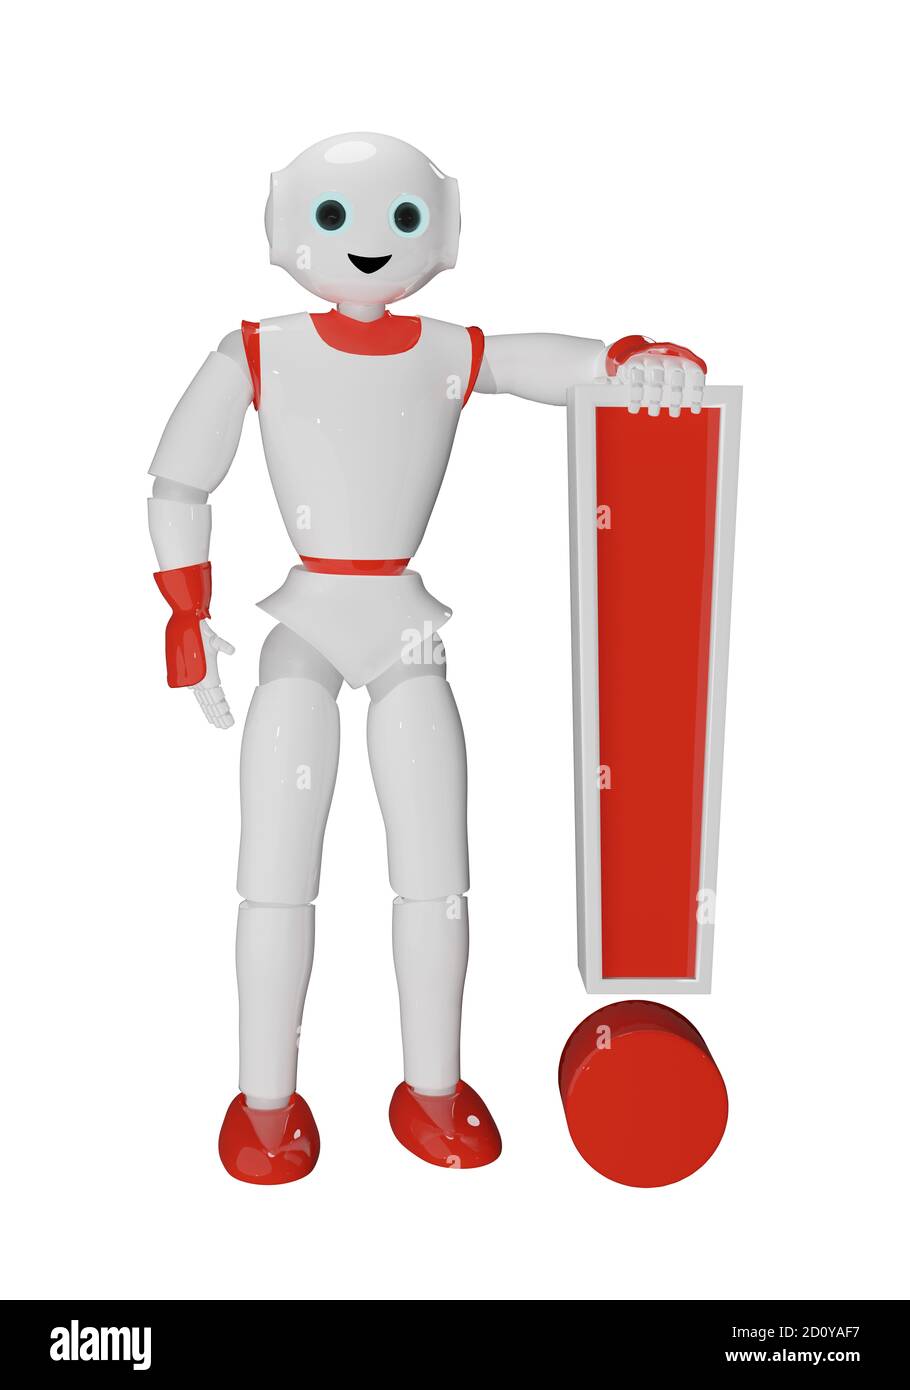 Le robot humanoïde repose sur un point d'exclamation. rendu 3d Banque D'Images